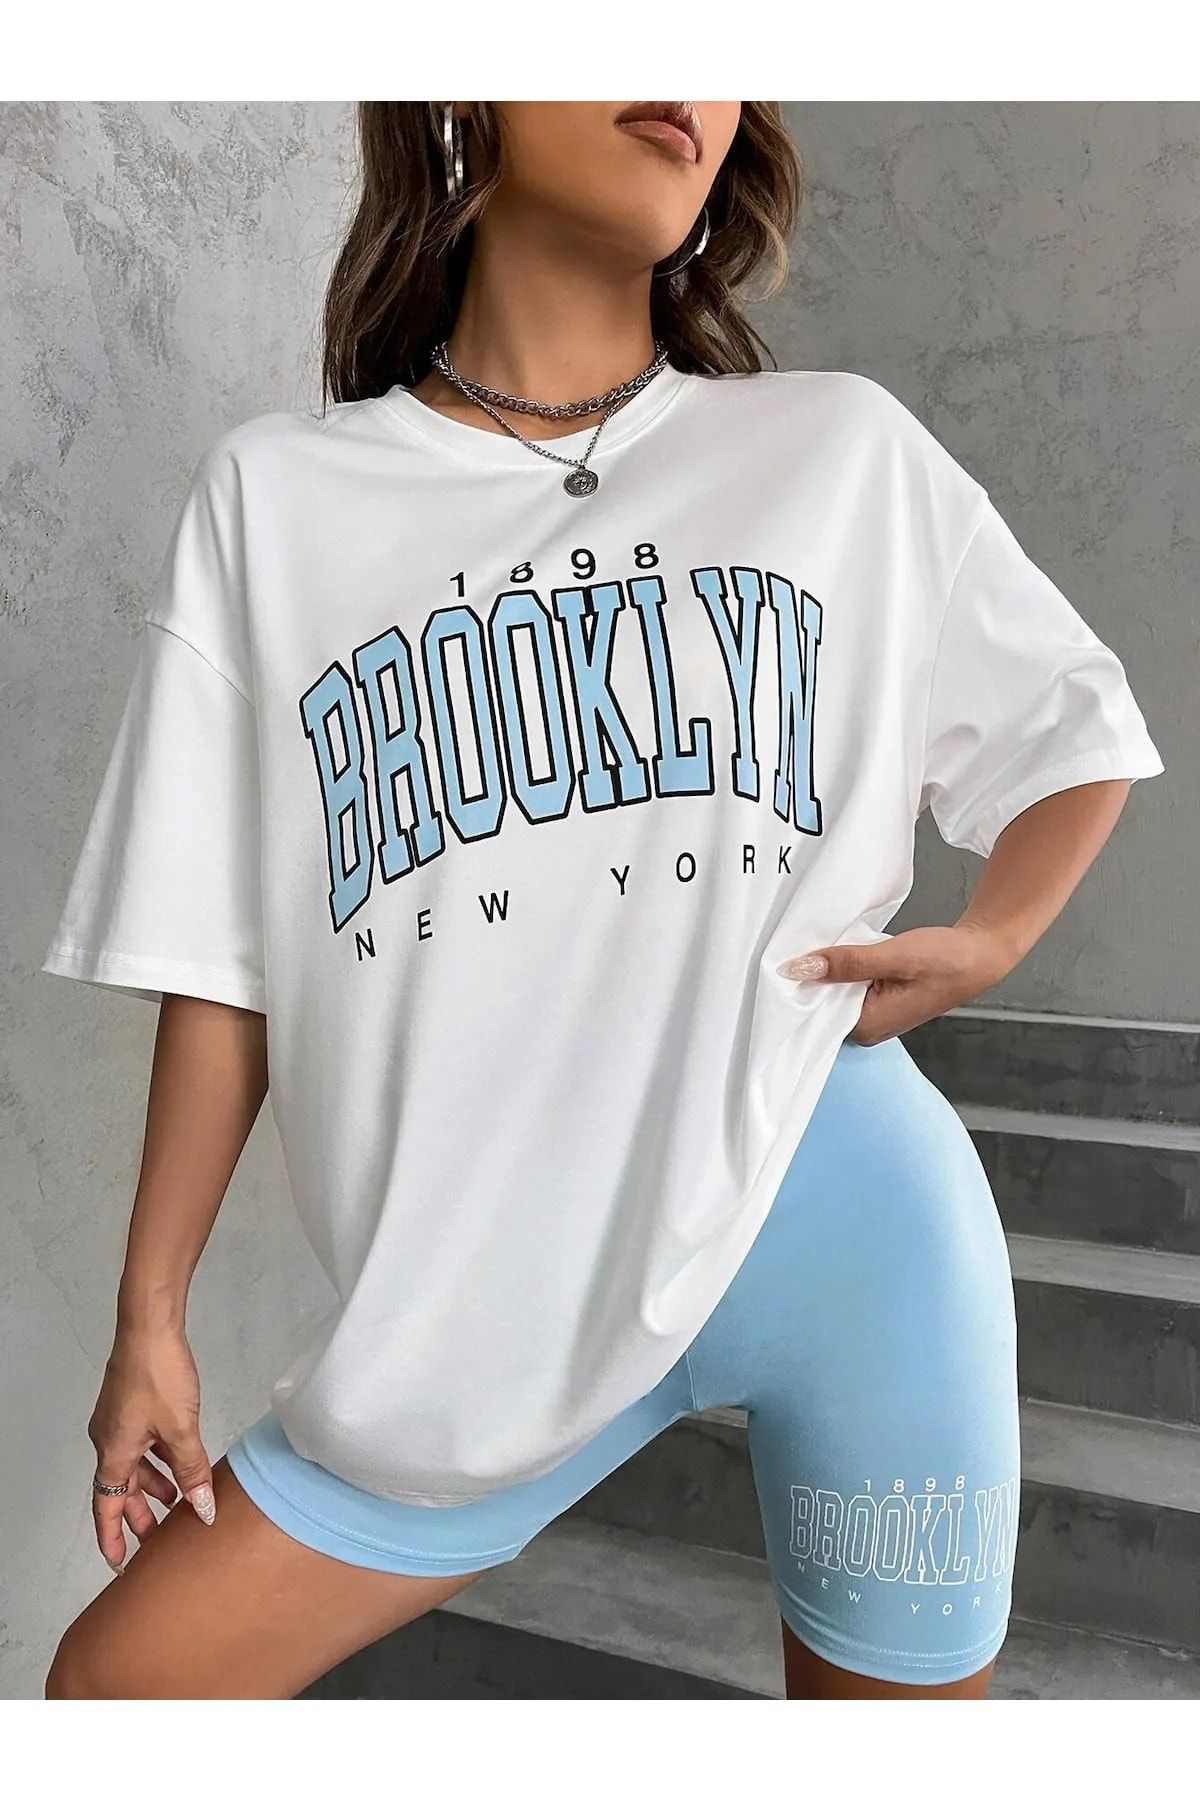 MODARİCH Brooklyn N.y 1898 Beyaz T-shirt Bebe Mavisi Kısa Biker Tayt - Tayt Alt Üst Takım Baskılı Oversize